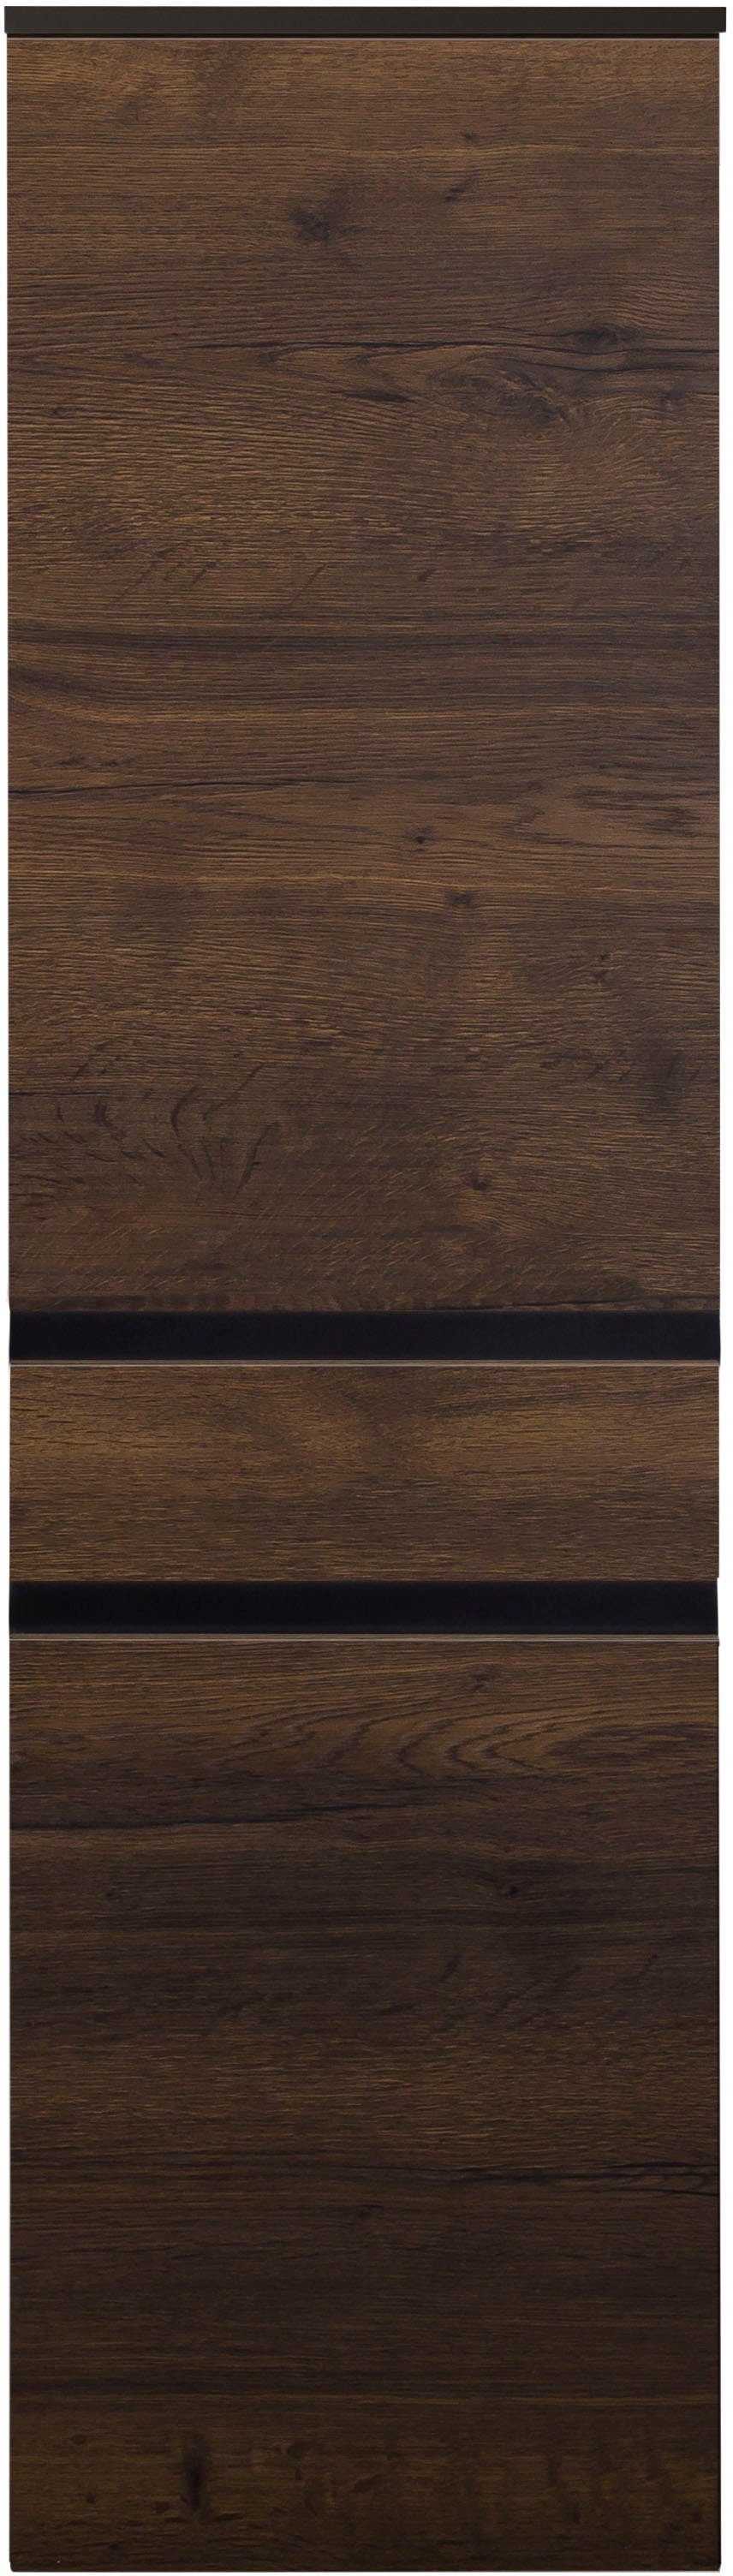 MARLIN Midischrank 3510clarus 40 cm breit, Soft-Close-Funktion,  vormontierter Badschrank, Badmöbel, Mit moderner Griffleiste in schwarz matt | Midischränke